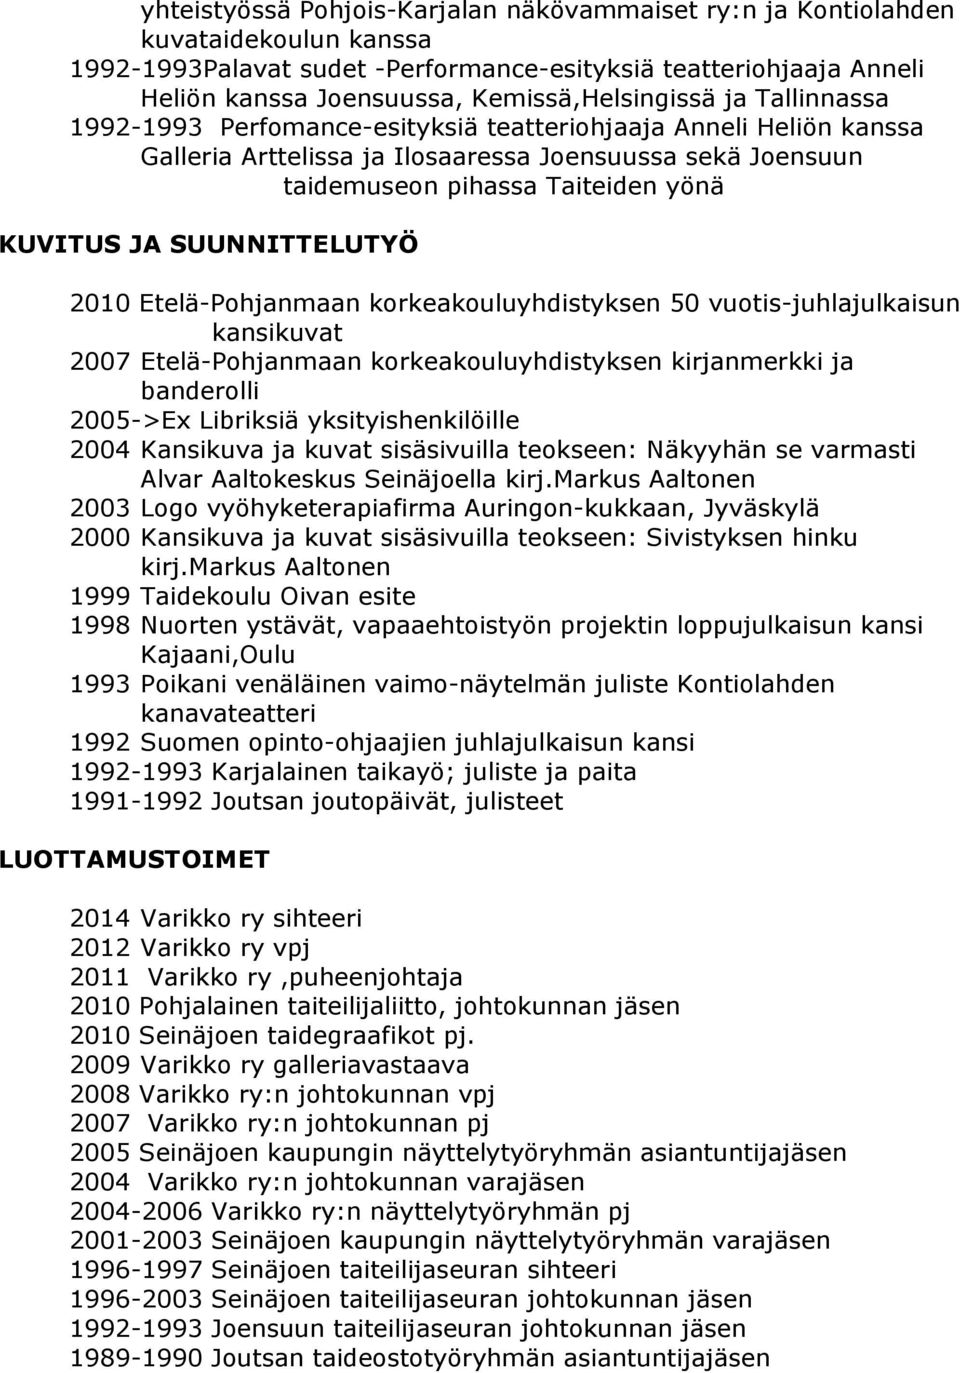 KUVITUS JA SUUNNITTELUTYÖ 2010 Etelä-Pohjanmaan korkeakouluyhdistyksen 50 vuotis-juhlajulkaisun kansikuvat 2007 Etelä-Pohjanmaan korkeakouluyhdistyksen kirjanmerkki ja banderolli 2005->Ex Libriksiä